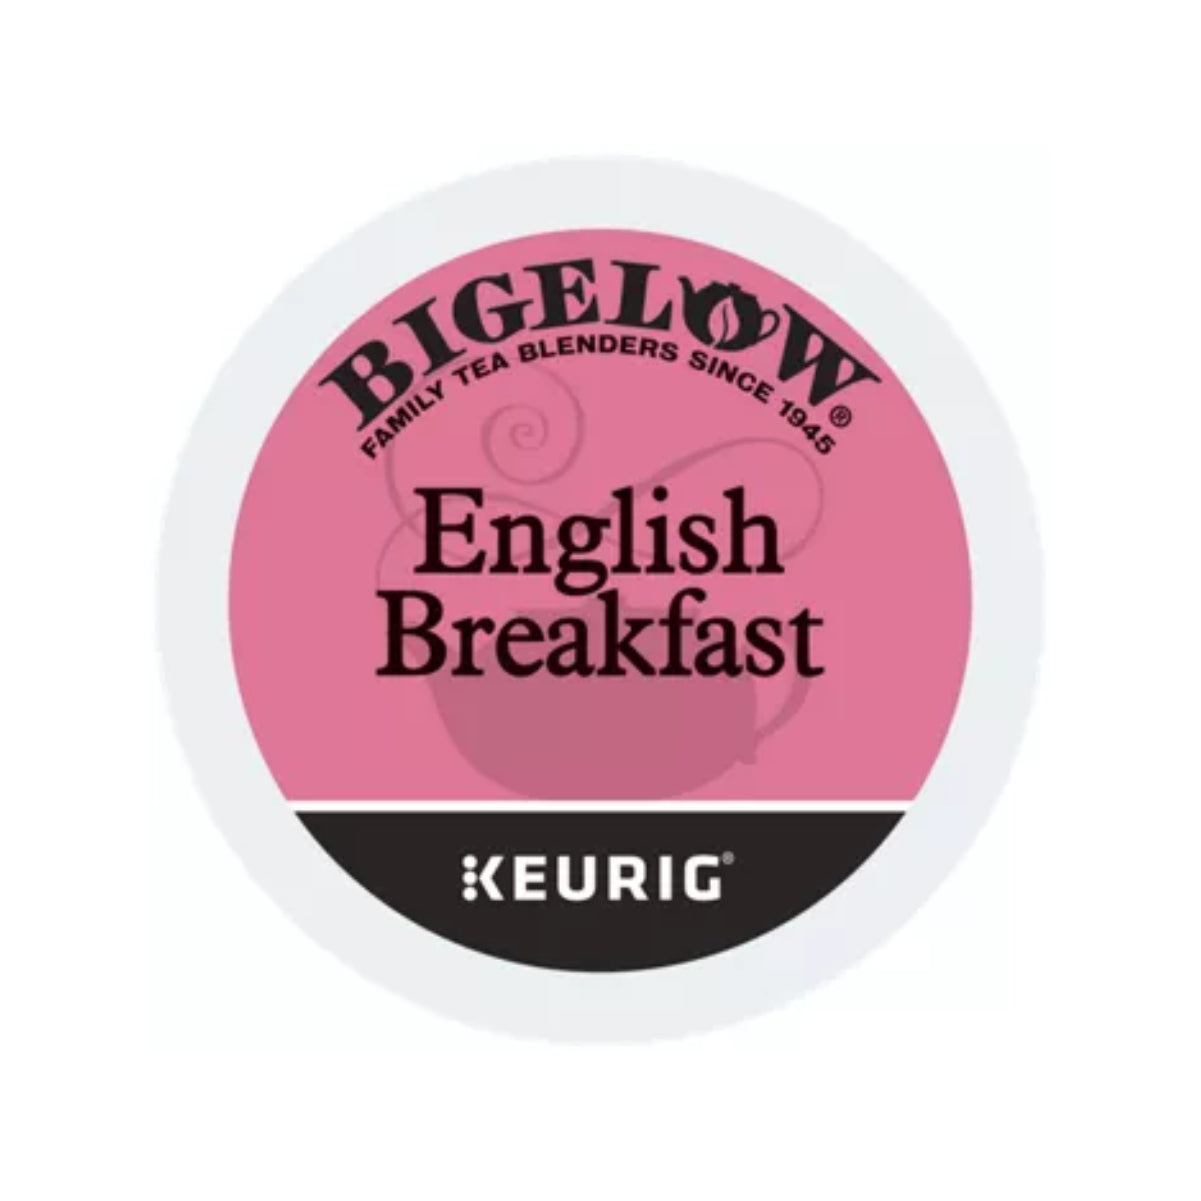 Bigelow Tea English Breakfast Keurig® K-Cup® Tea Pods